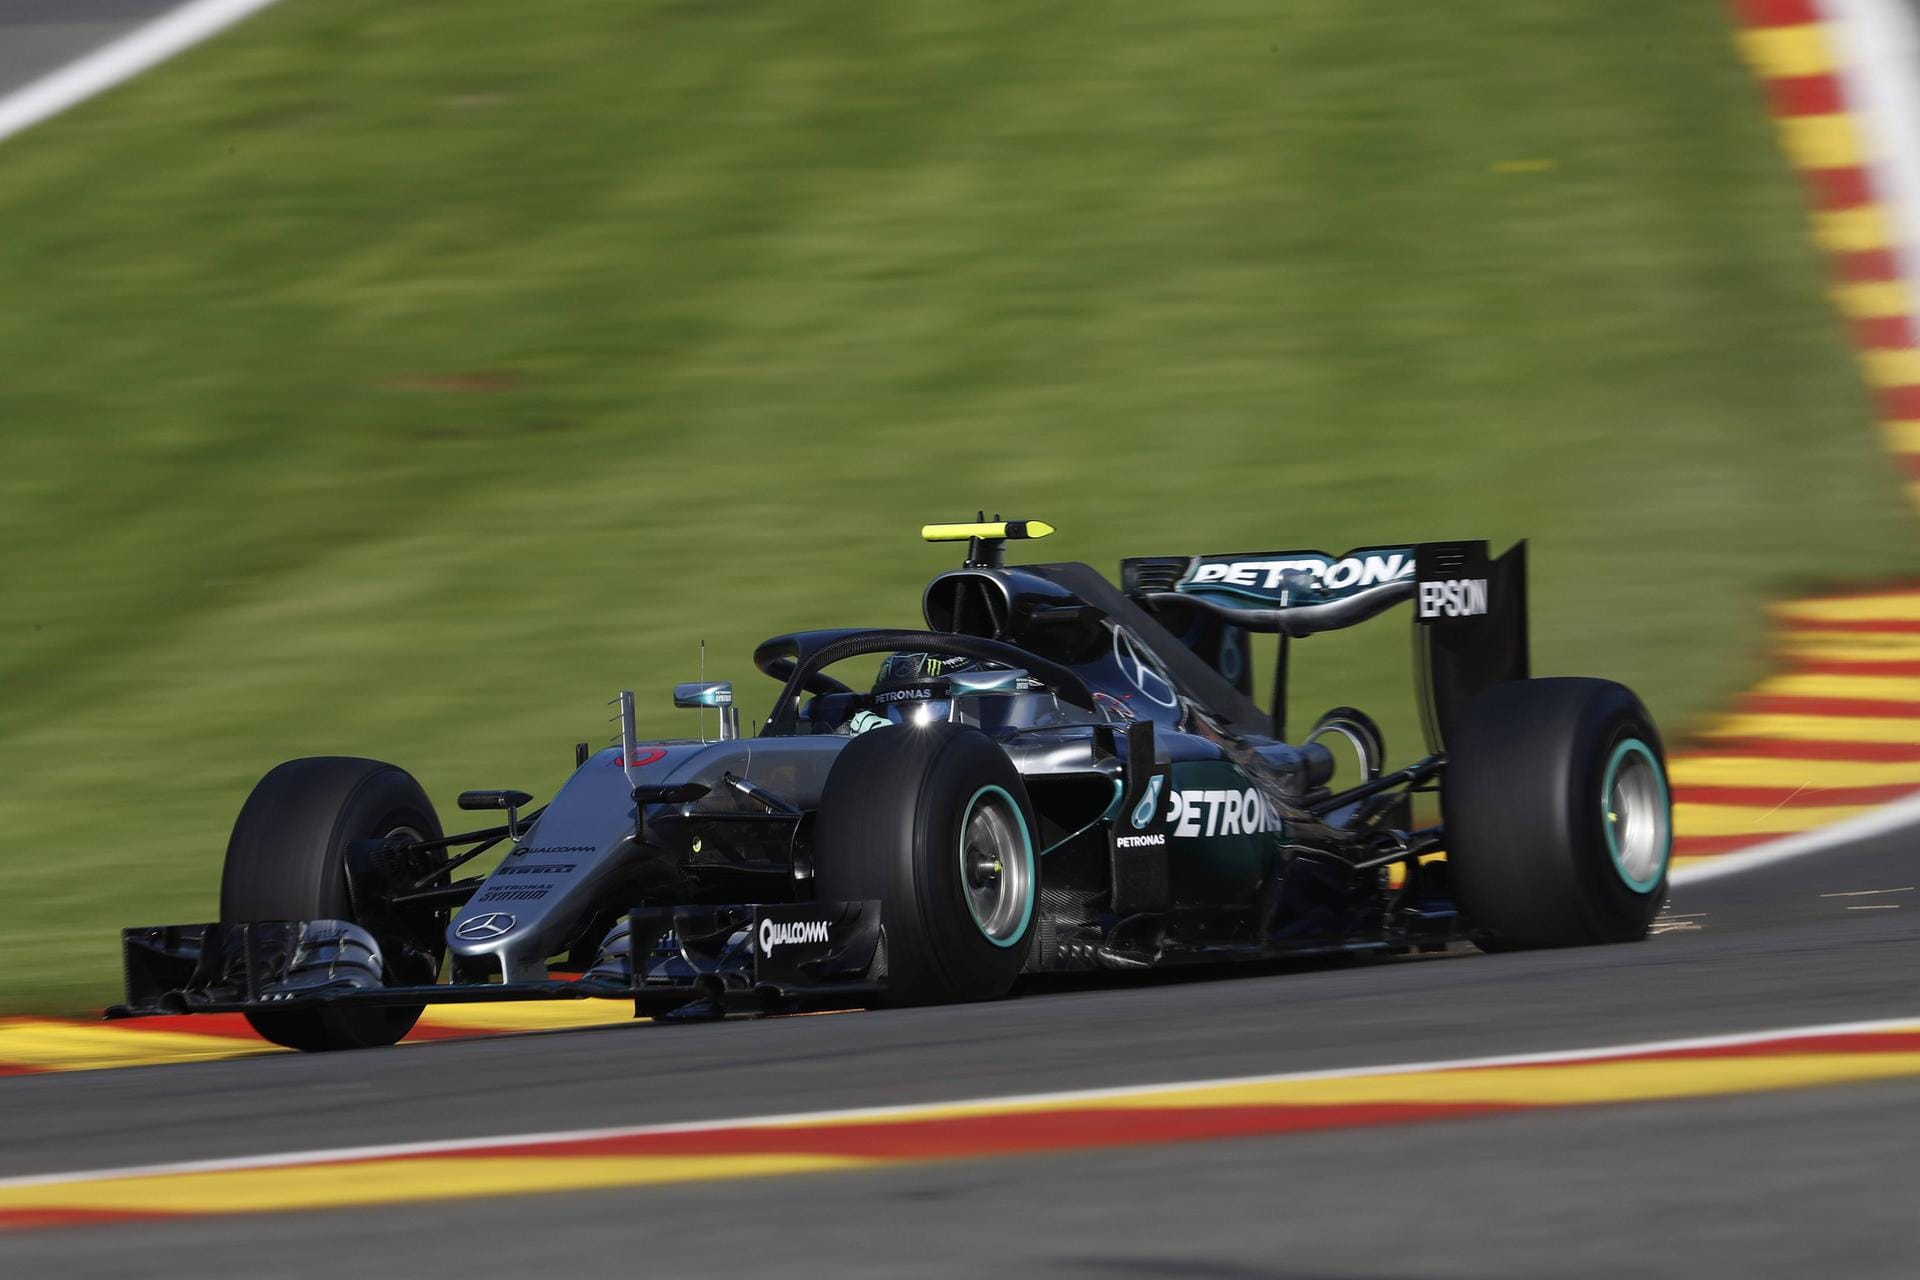 Für spektakuläre Bilder sorgt Nico Rosberg, der im Training für ein paar Runden mit dem "Halo"-Sicherheitsbügel unterwegs ist.